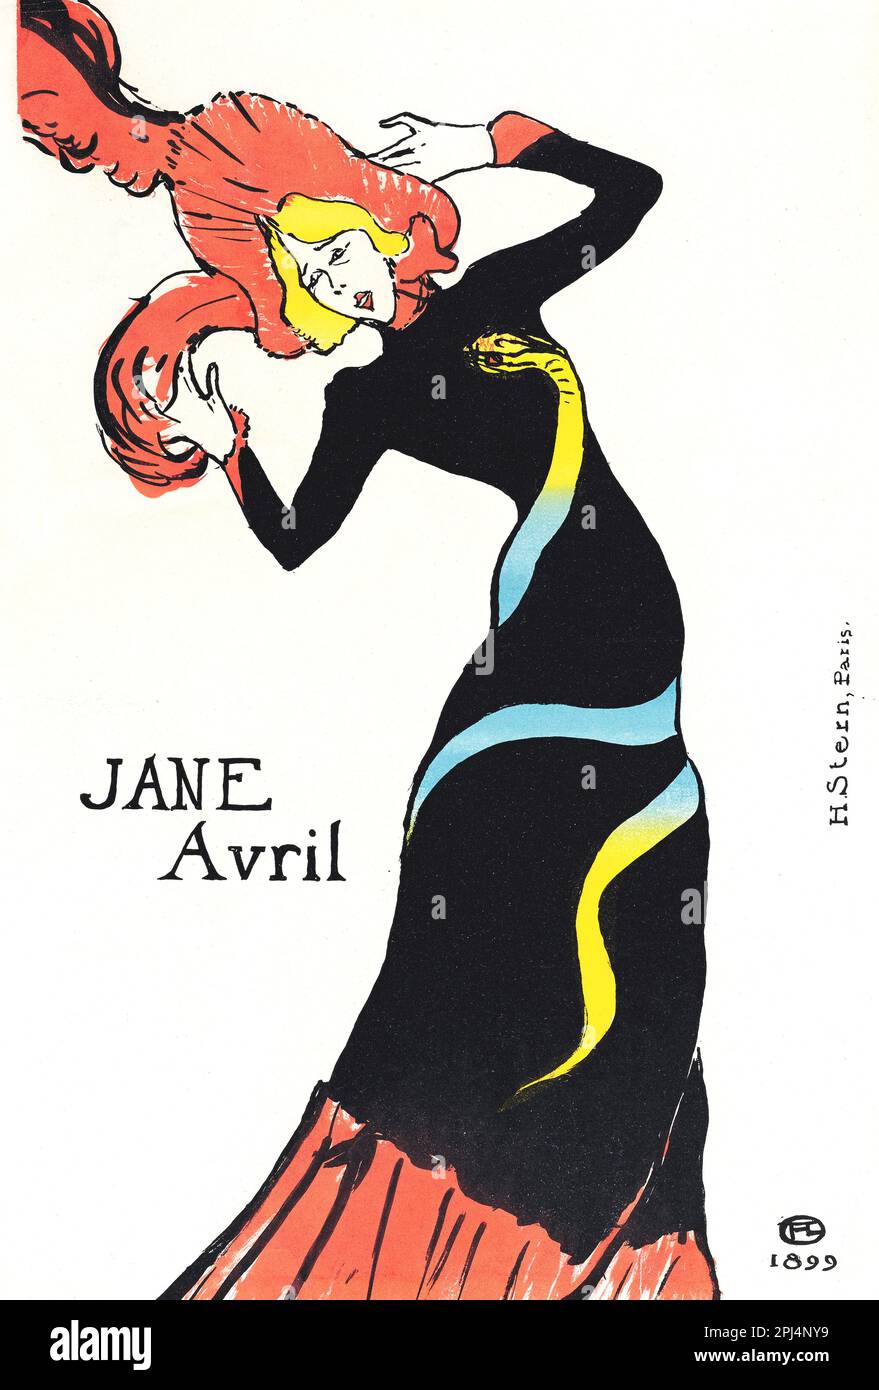 Jane Avril - Can-Can Dancer - Henri de Toulouse-Lautrec - 1899 Stock Photo